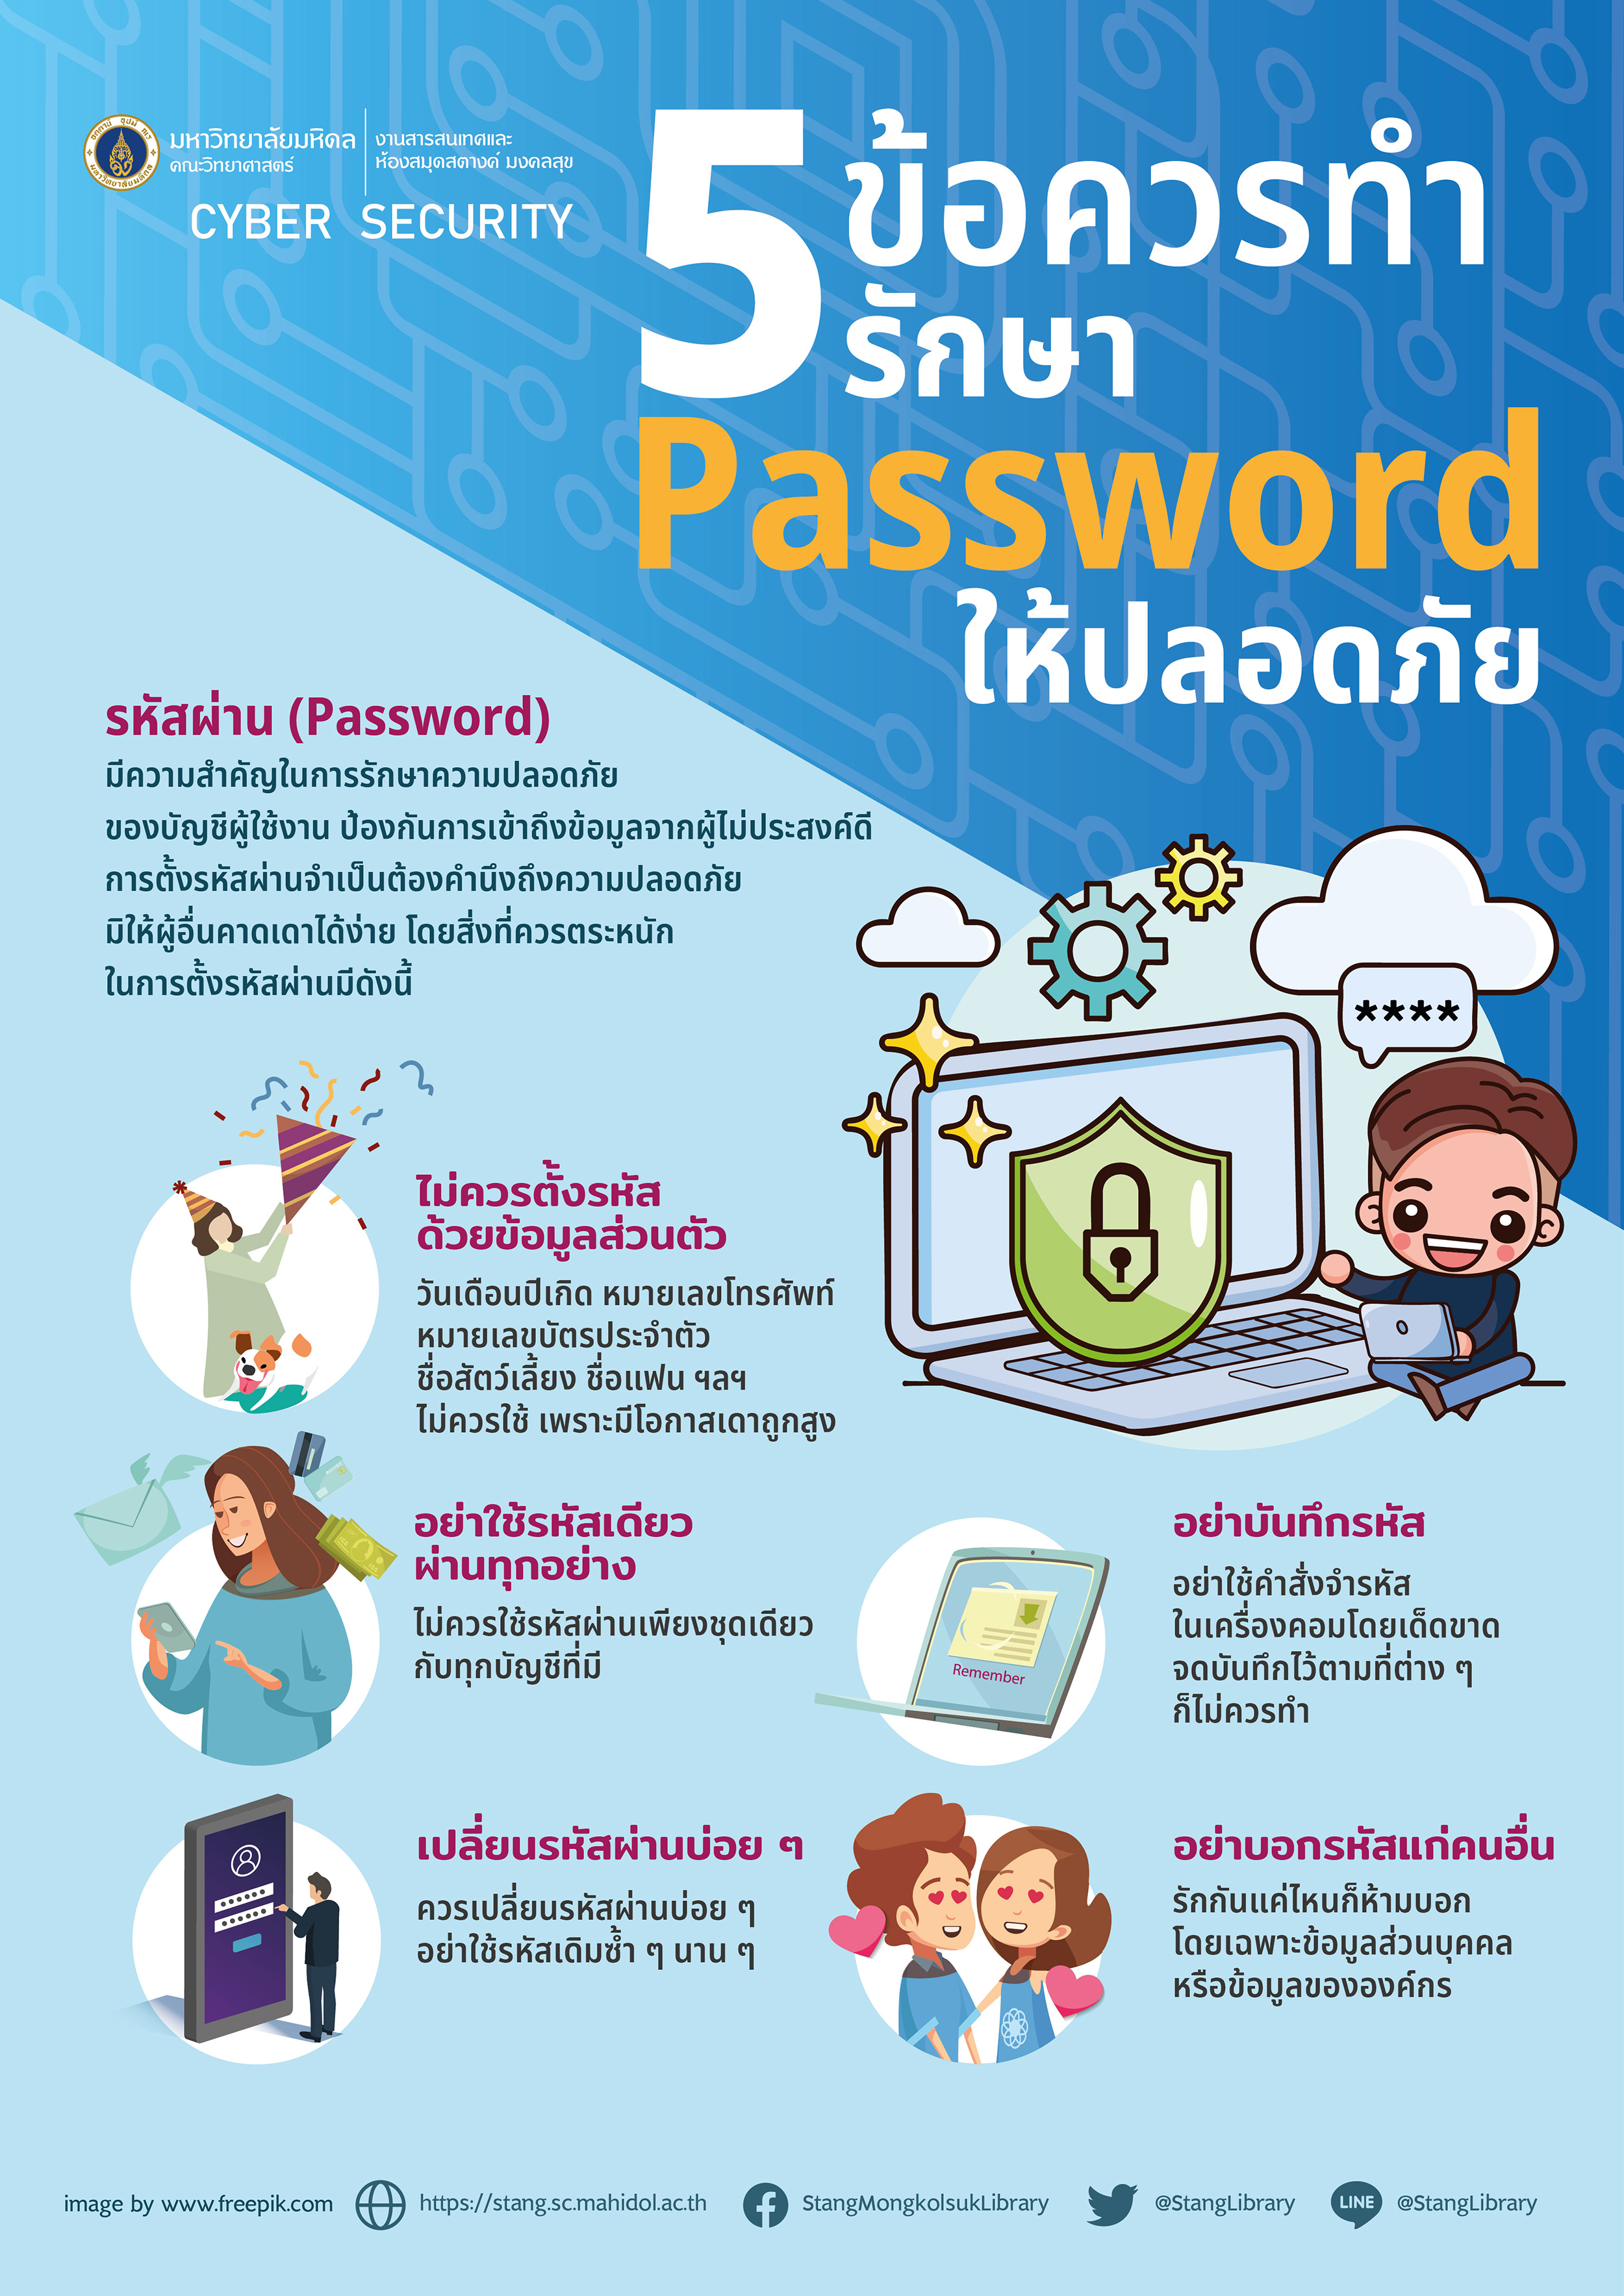 5 ข้อควรทำ รักษา password ให้ปลอดภัย